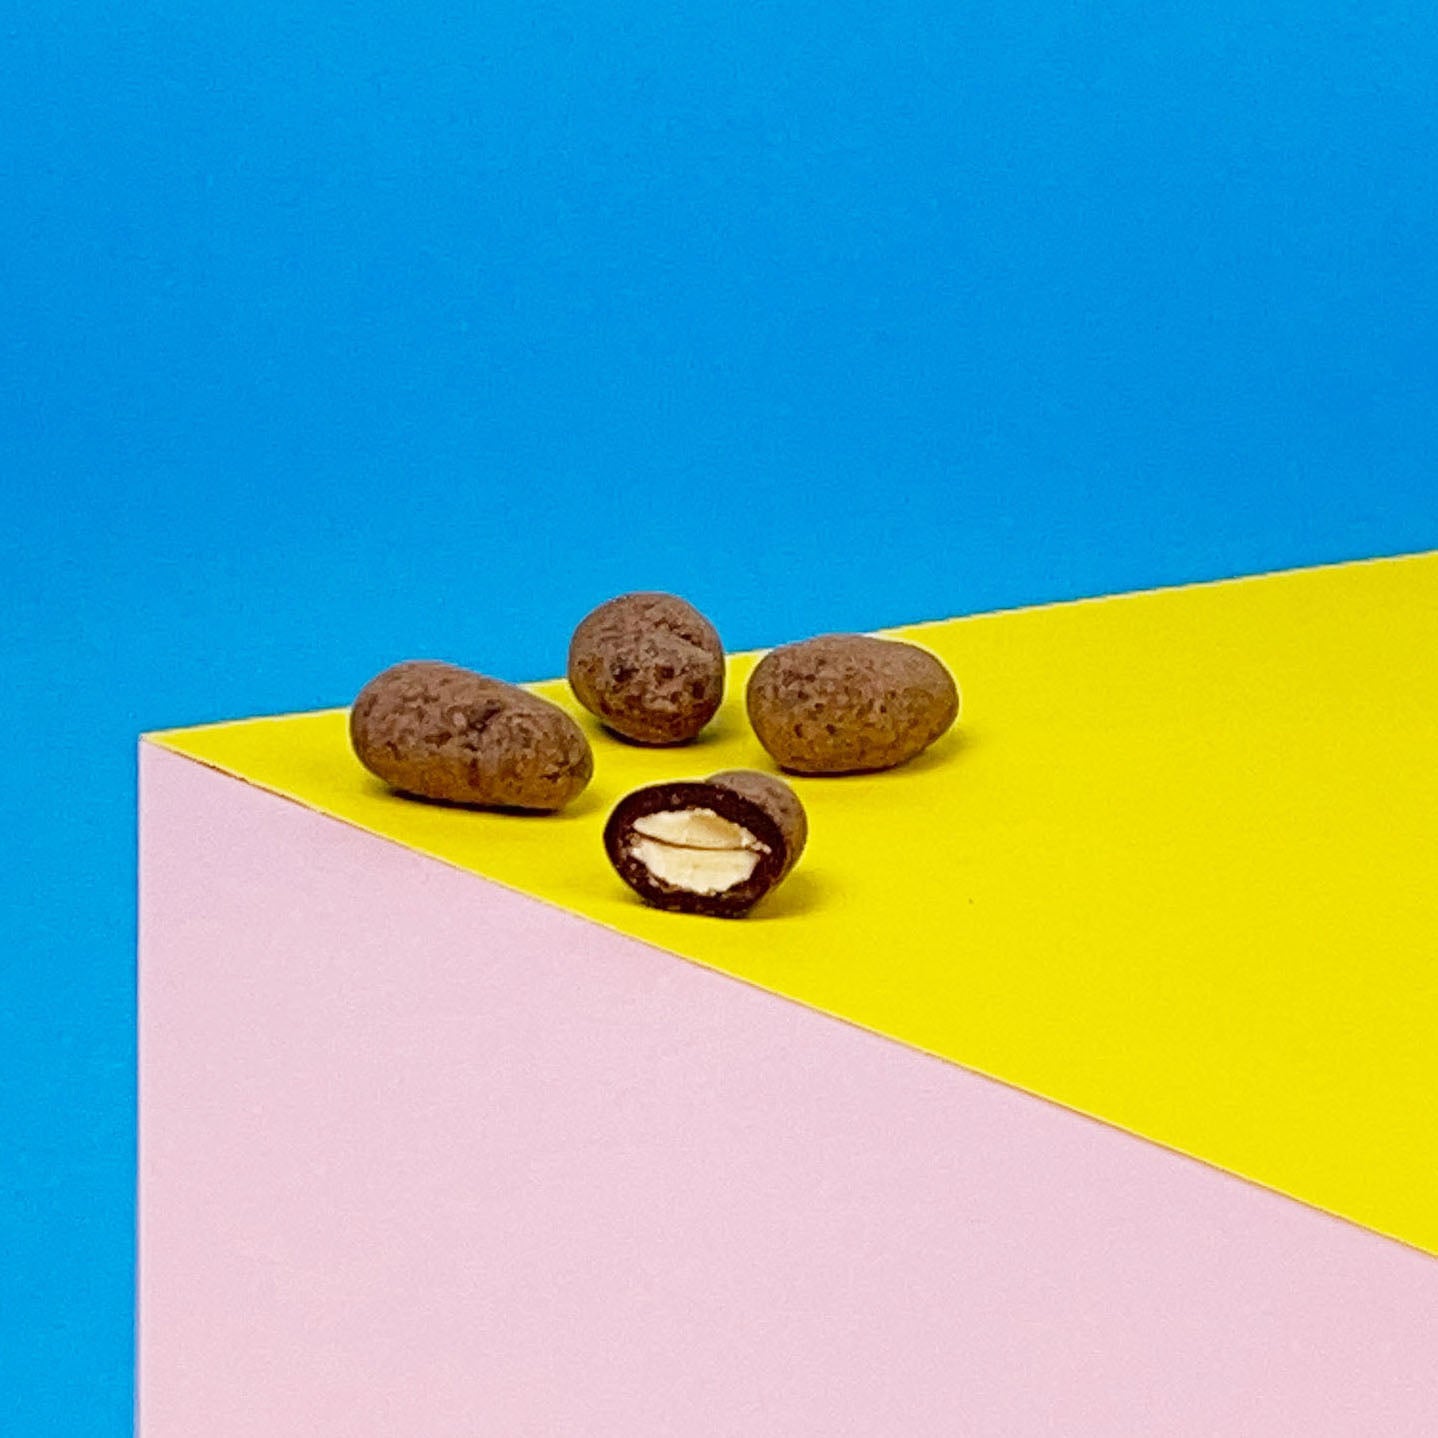 Karamellisierte Mandeln umhüllt von Zartbitterschokolade liegen angeschnitten auf einem bunten Hintergrund. Vegane Schokoladendragees mit außergewöhnlichem Geschmack,